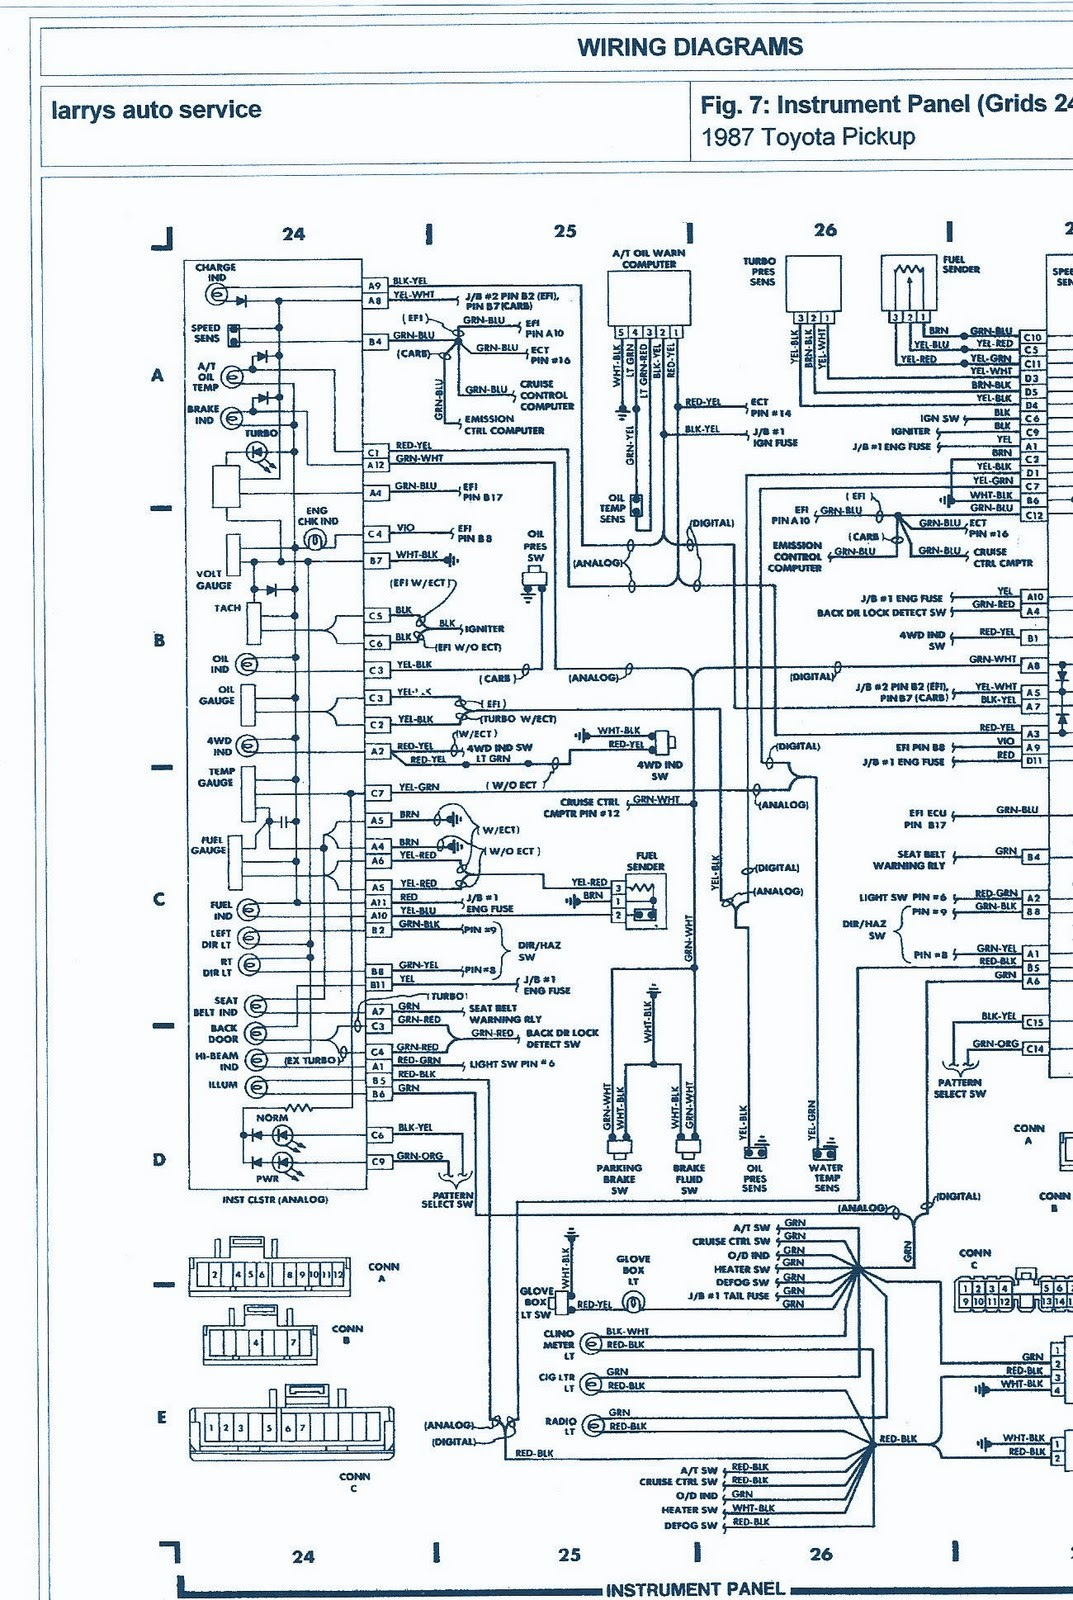 1987 Chevy Pickup Wiring Diagram - Wiring Diagram Schema